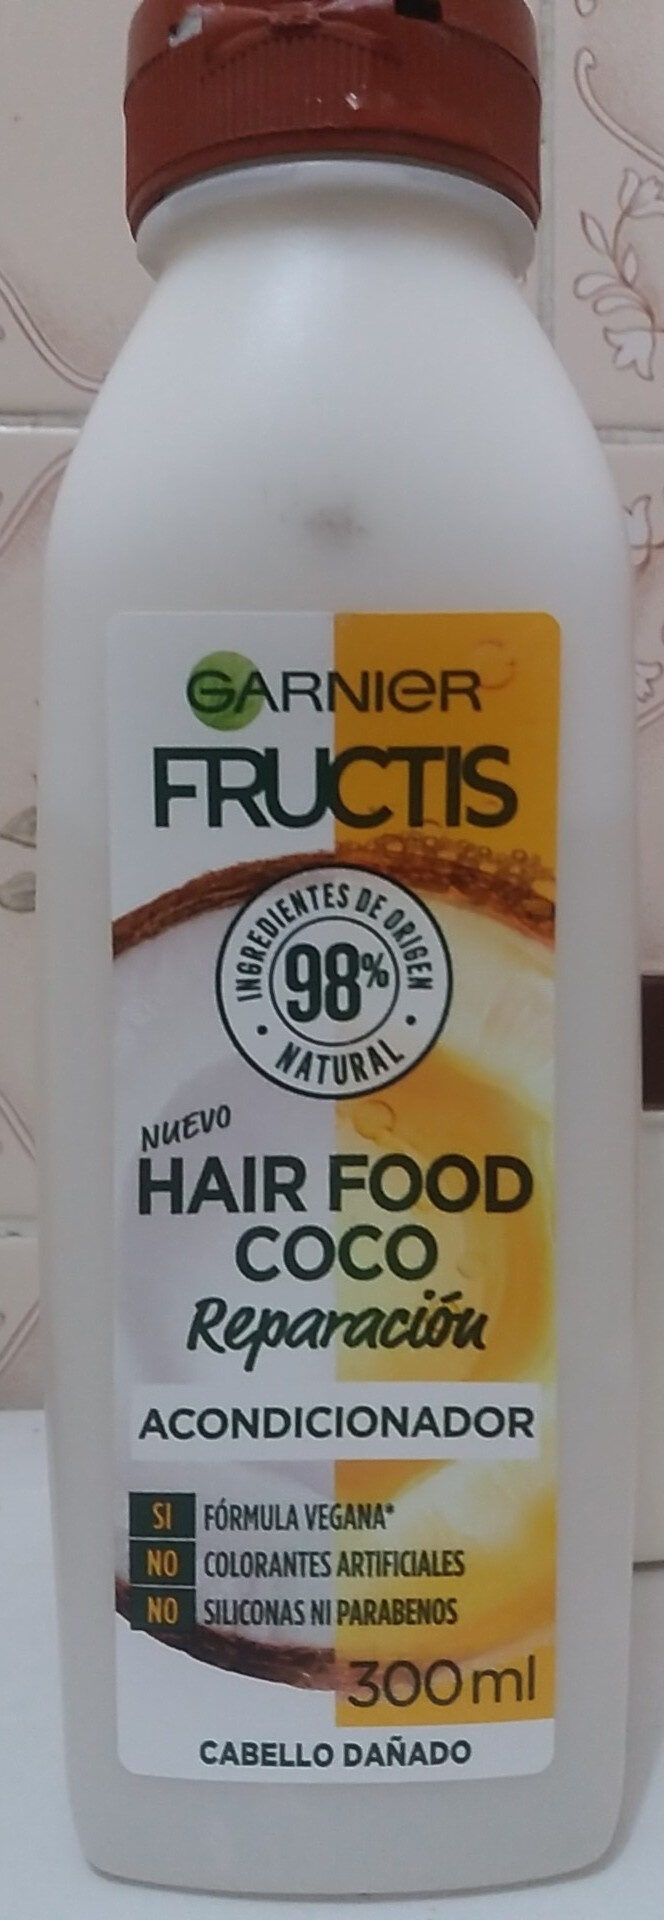 Hair Food Coco Acondicionador - Tuote - es